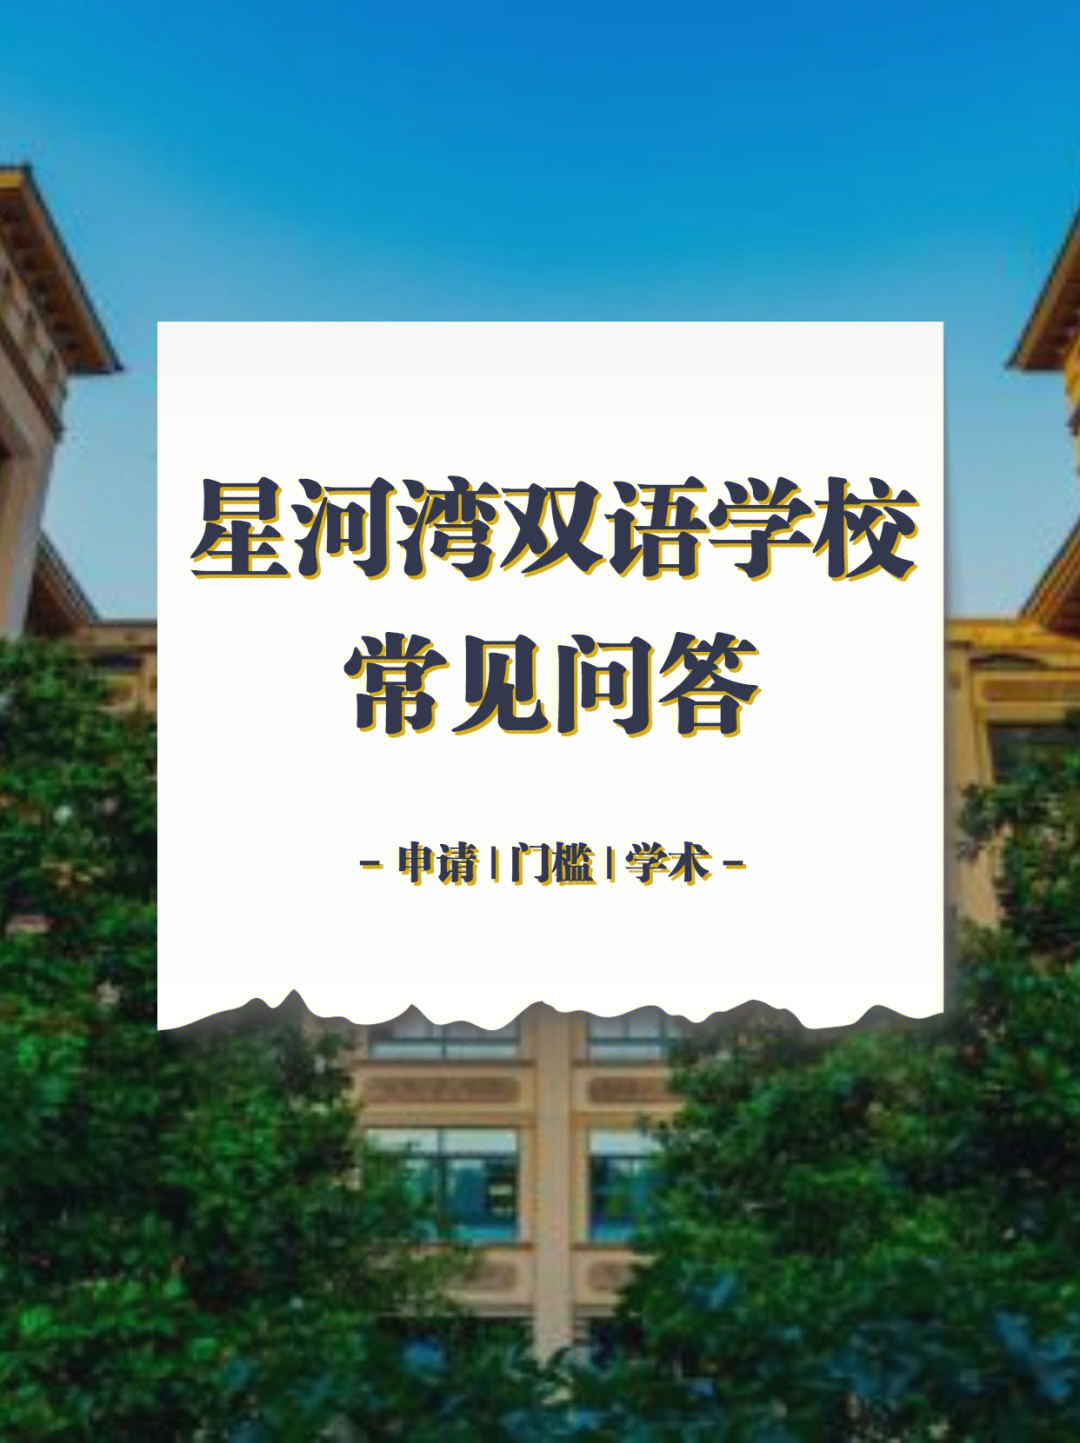 星河湾学校是上海热门97的十二年一贯制国际双语学校93,2012年